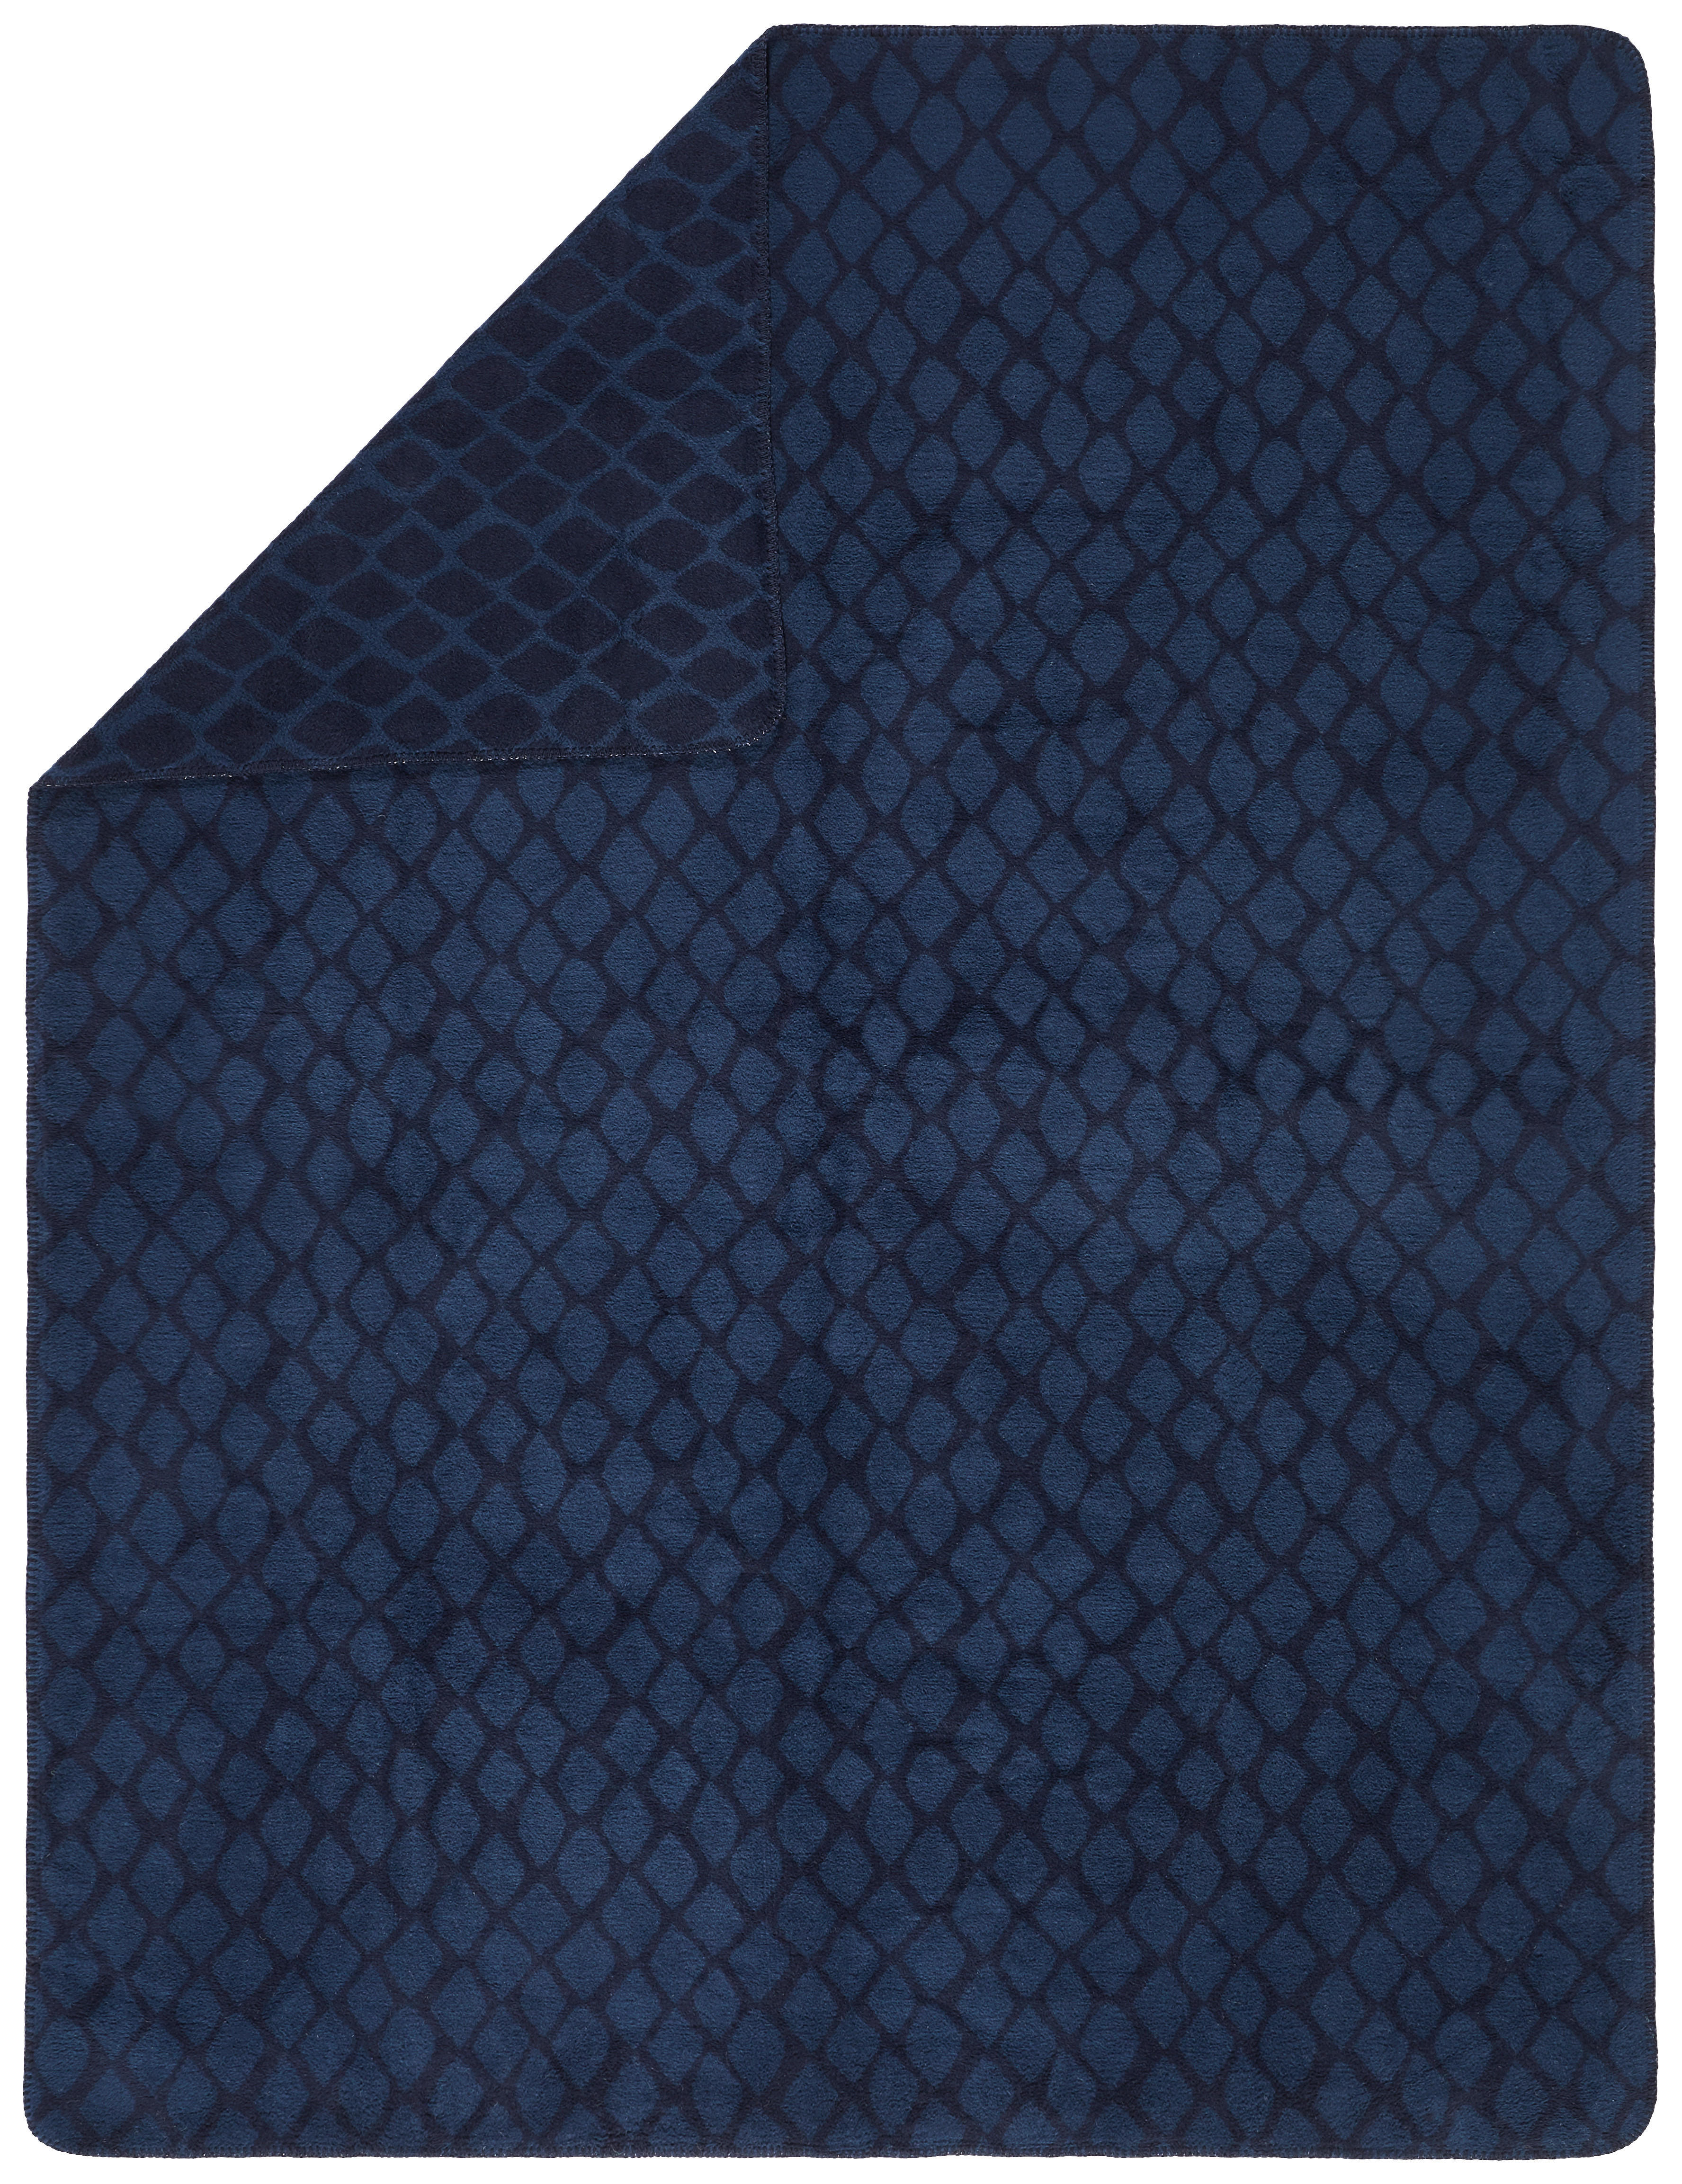 DECKE 150/200 cm  - Blau, Basics, Textil (150/200cm) - Dieter Knoll